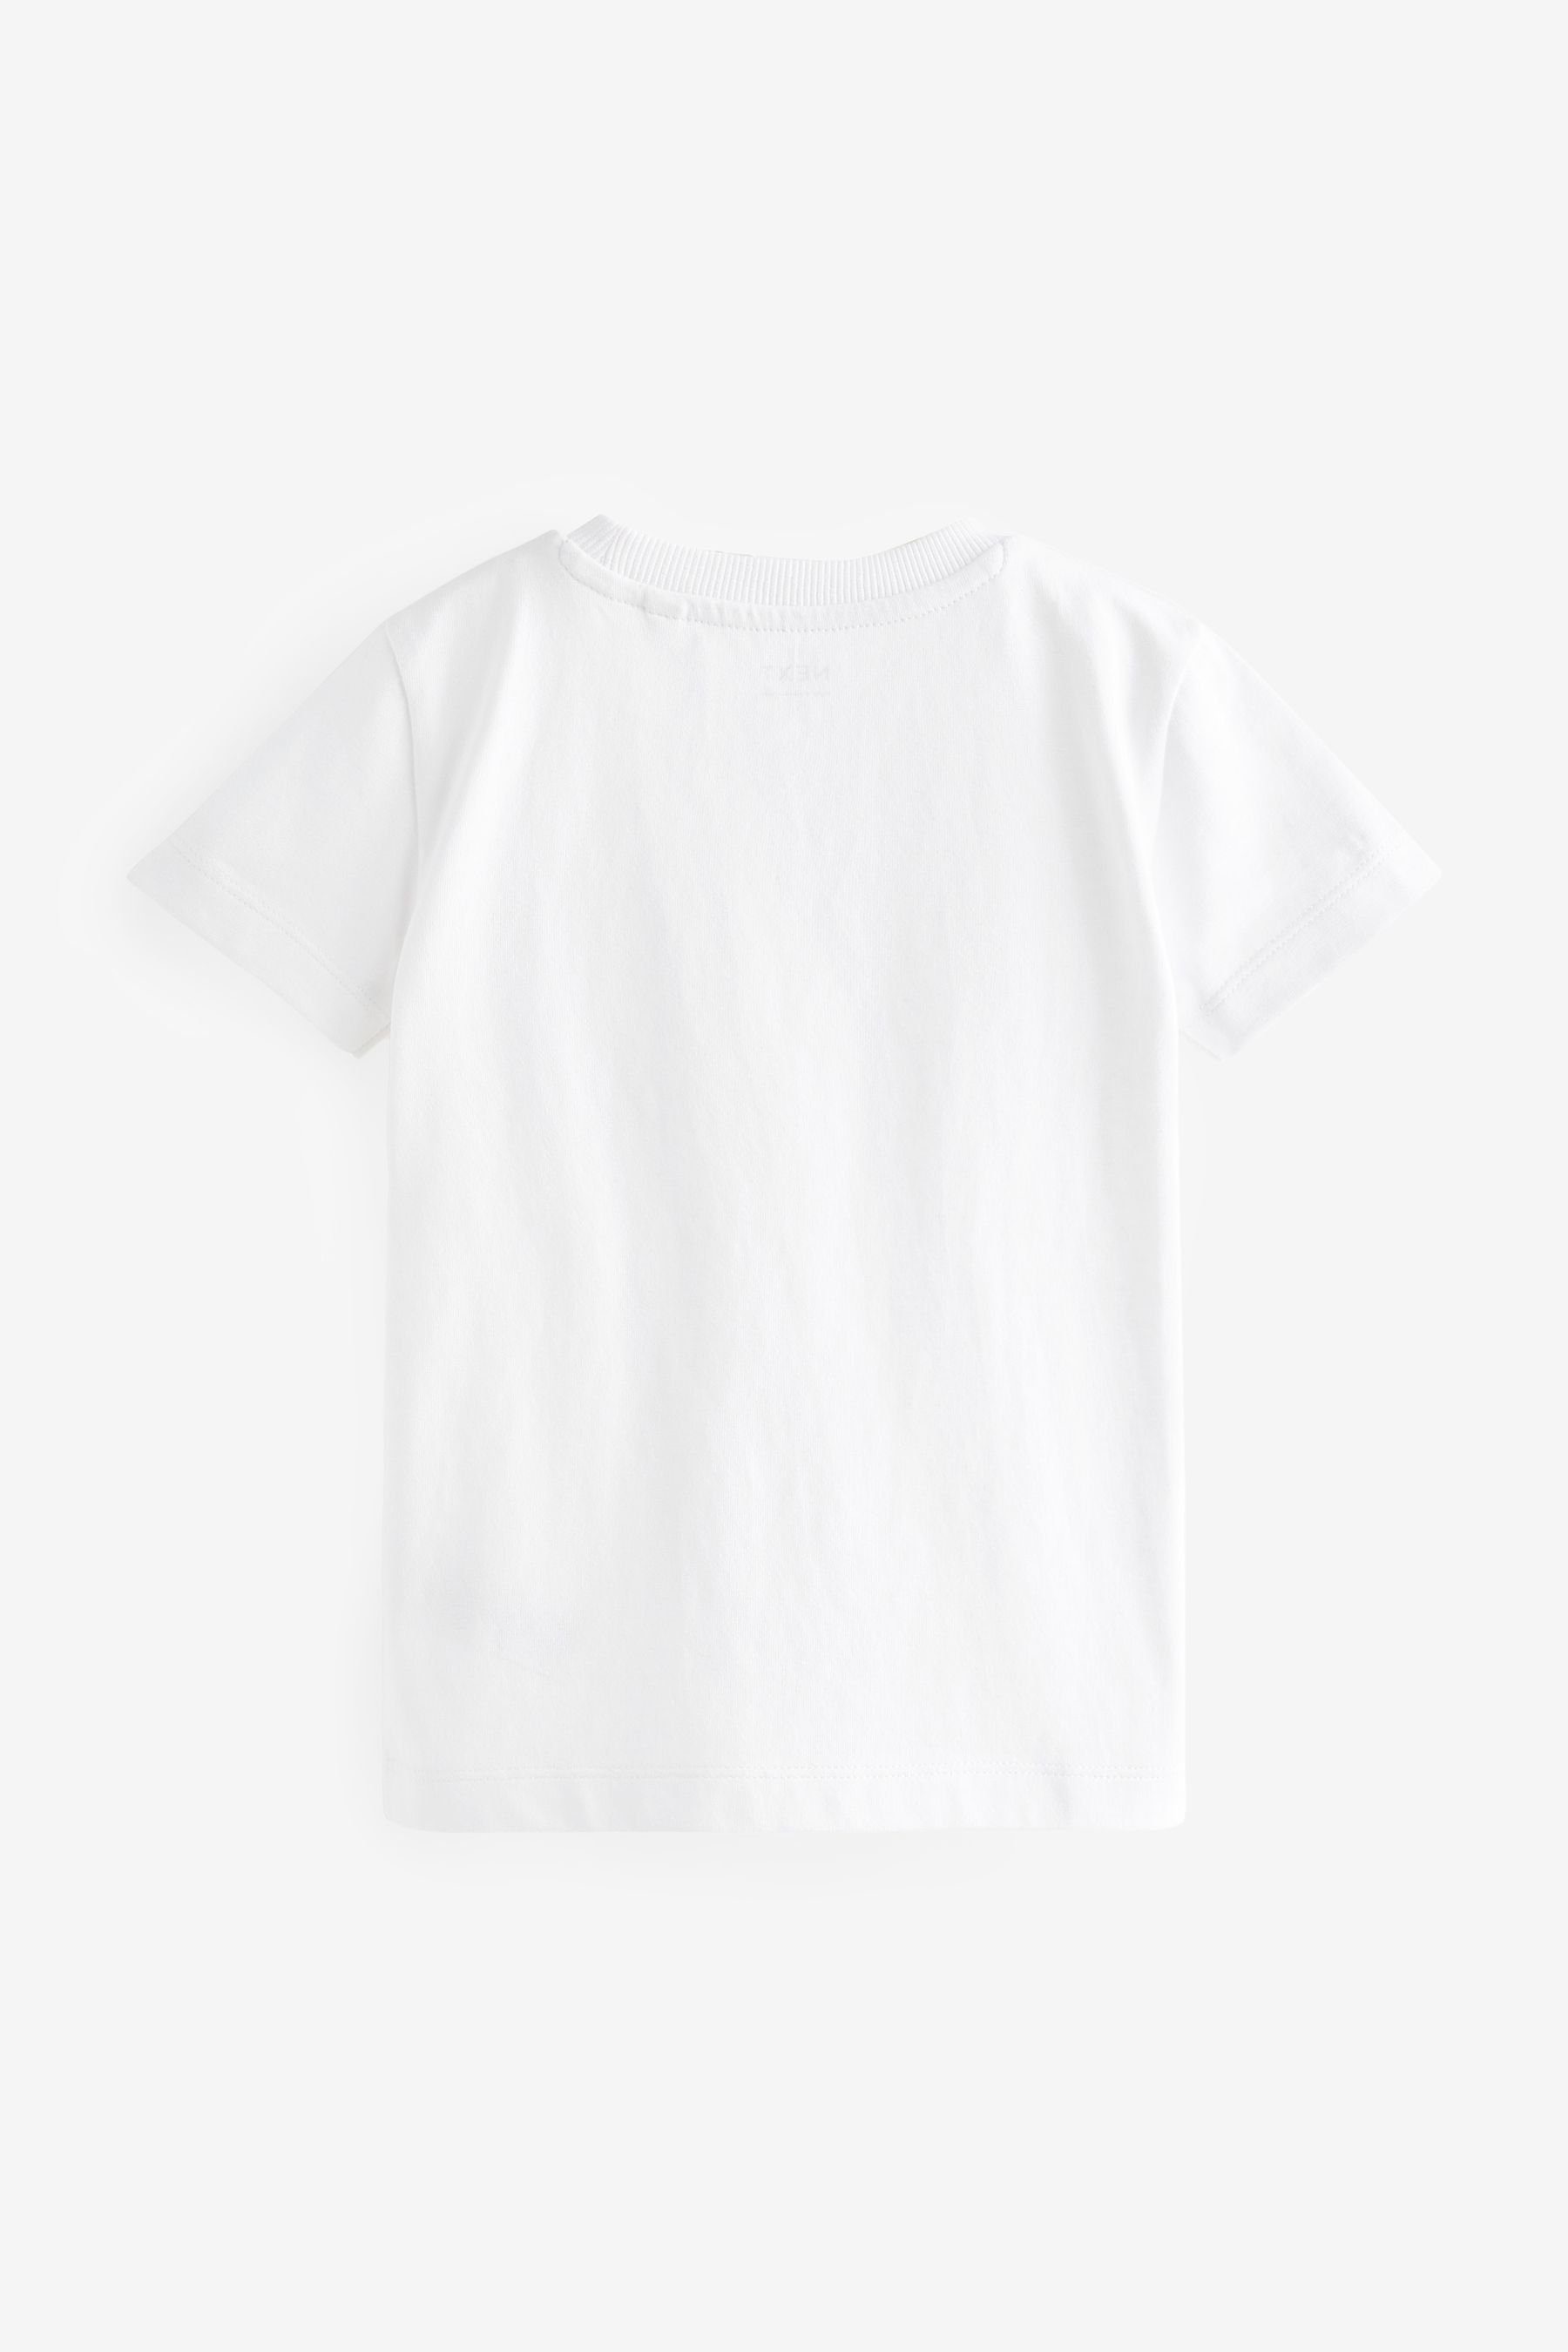 mit Campervan (1-tlg) T-Shirt White T-Shirt Brusttasche Next